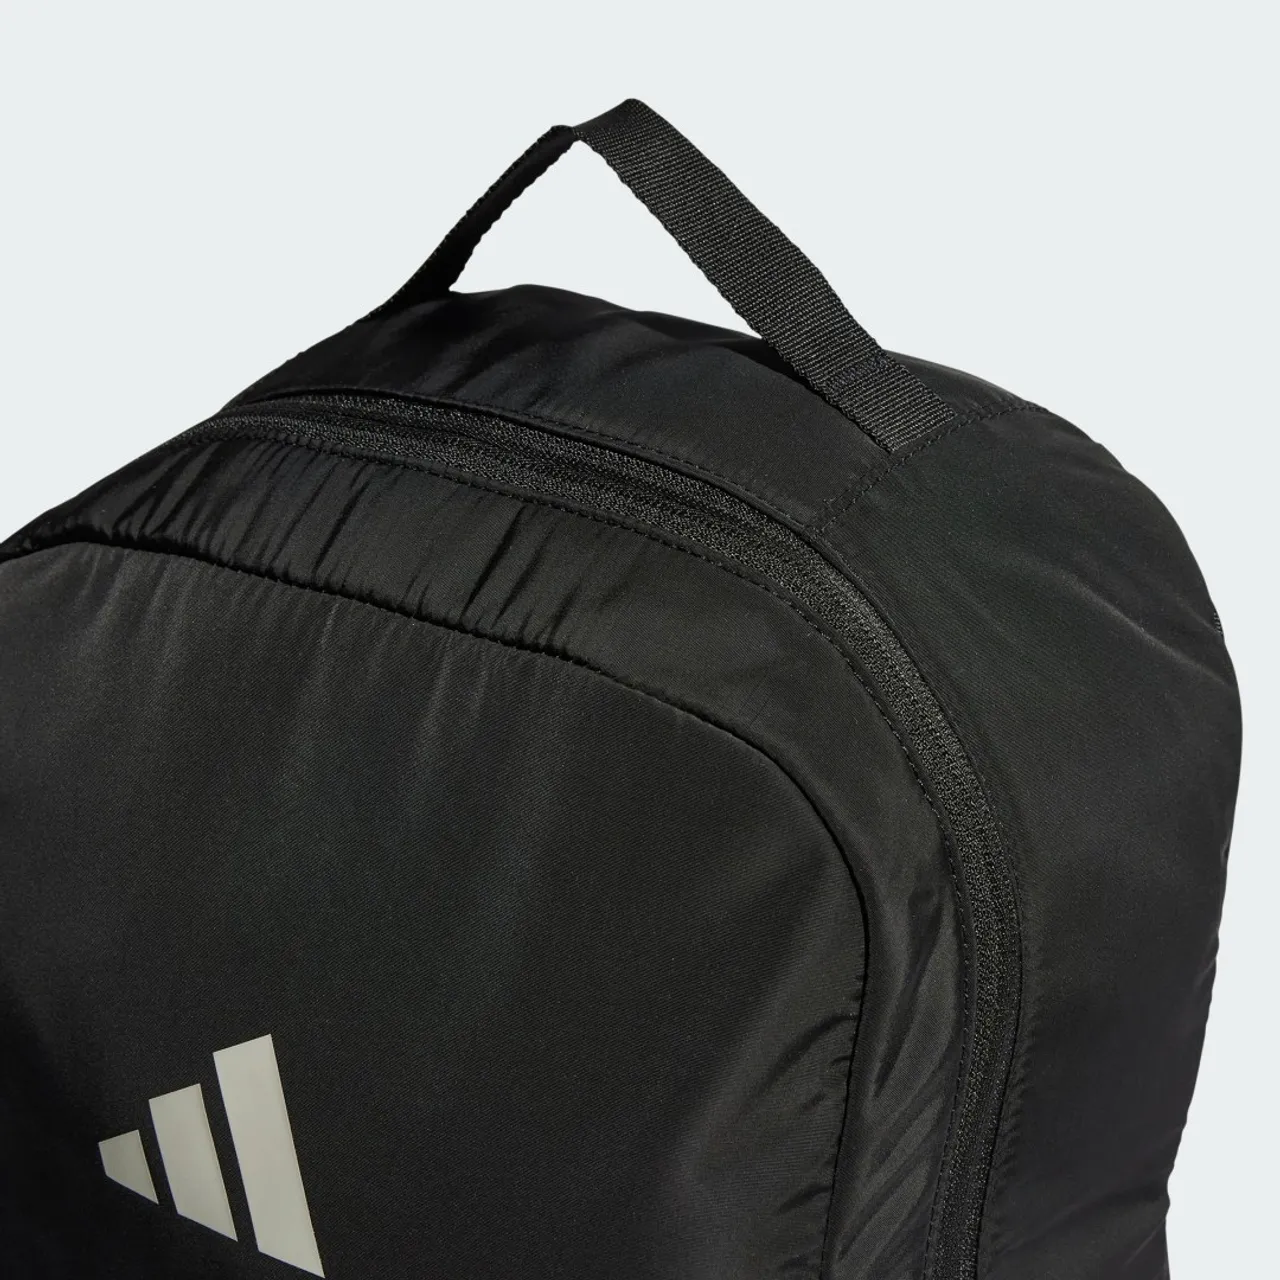 Sport Padded Backpack